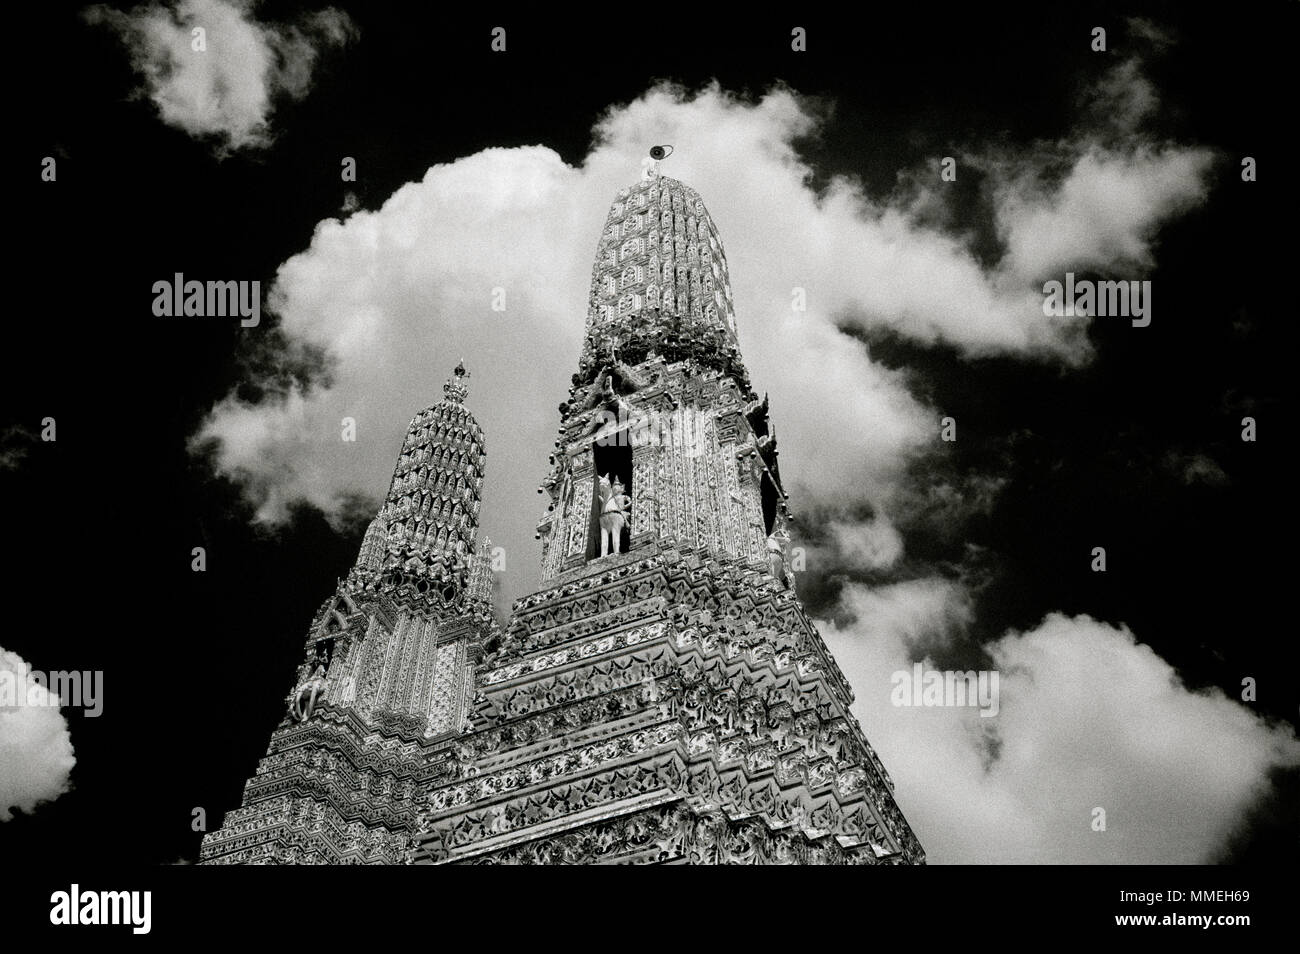 Ciel clair-obscur dramatique et le temple bouddhiste de l'aube - Wat Arun Temple à Thonburi Bangkok Yai en Thaïlande en Asie du Sud-Est Extrême-Orient. Billet d'B&W Banque D'Images